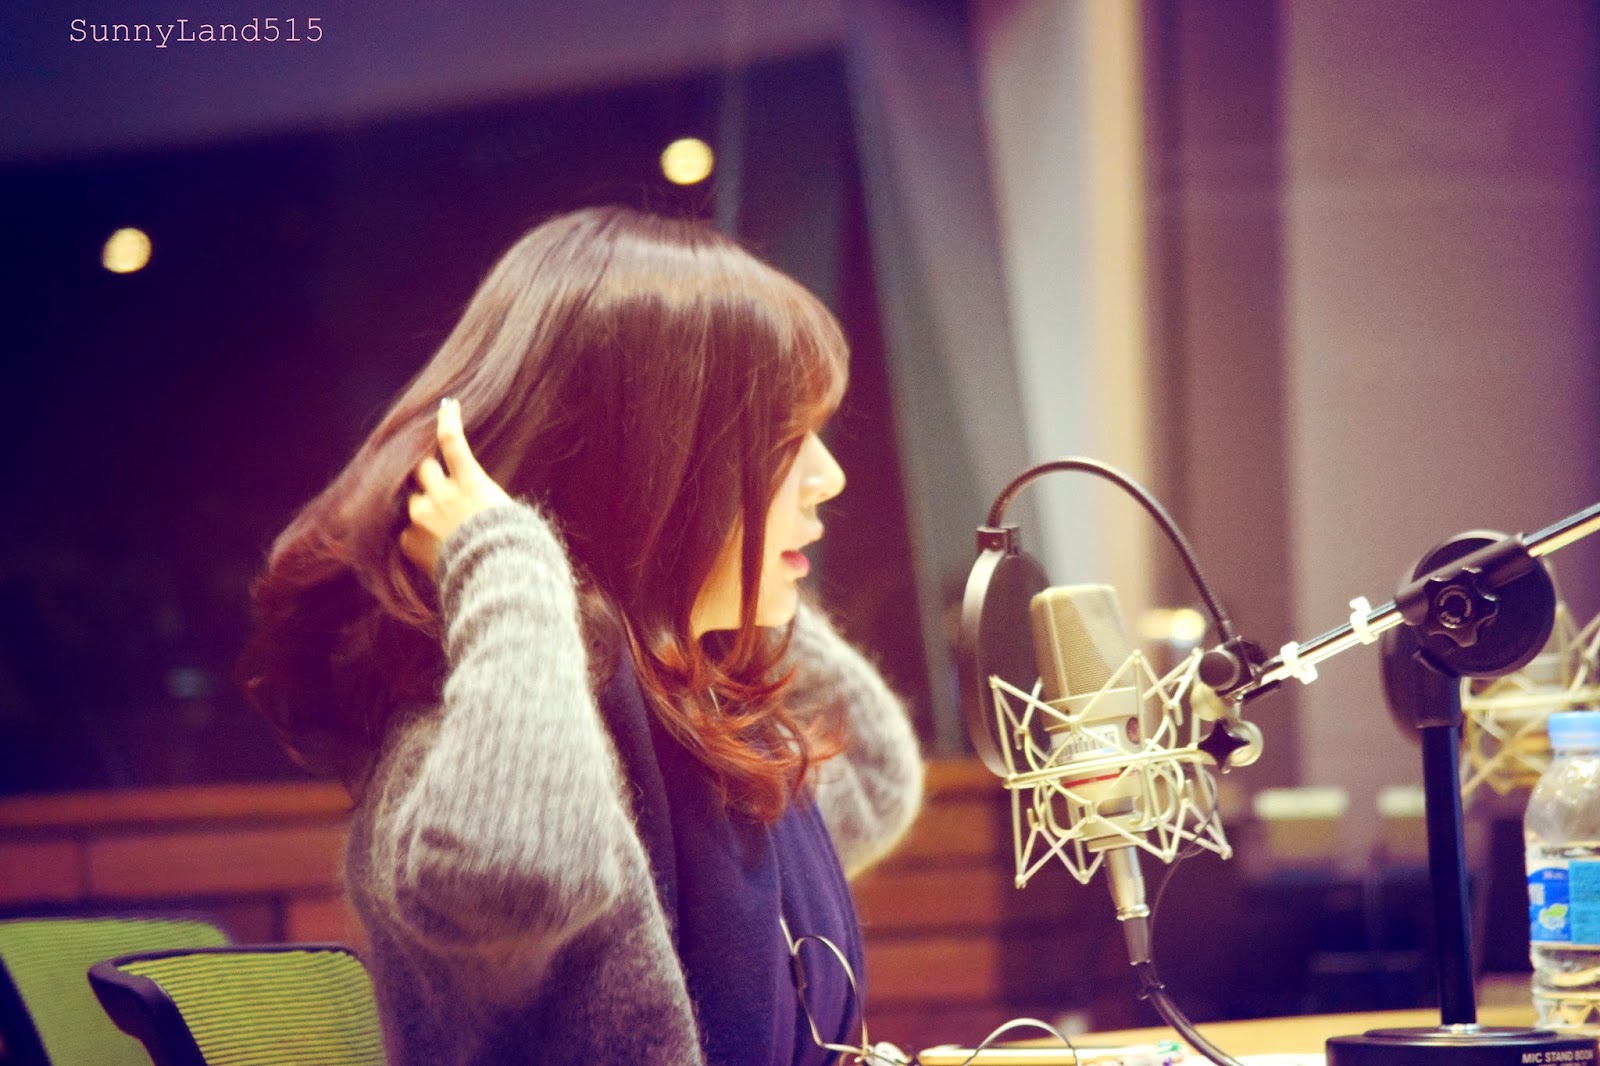 [OTHER][06-02-2015]Hình ảnh mới nhất từ DJ Sunny tại Radio MBC FM4U - "FM Date" - Page 10 DSC_0336_Fotor